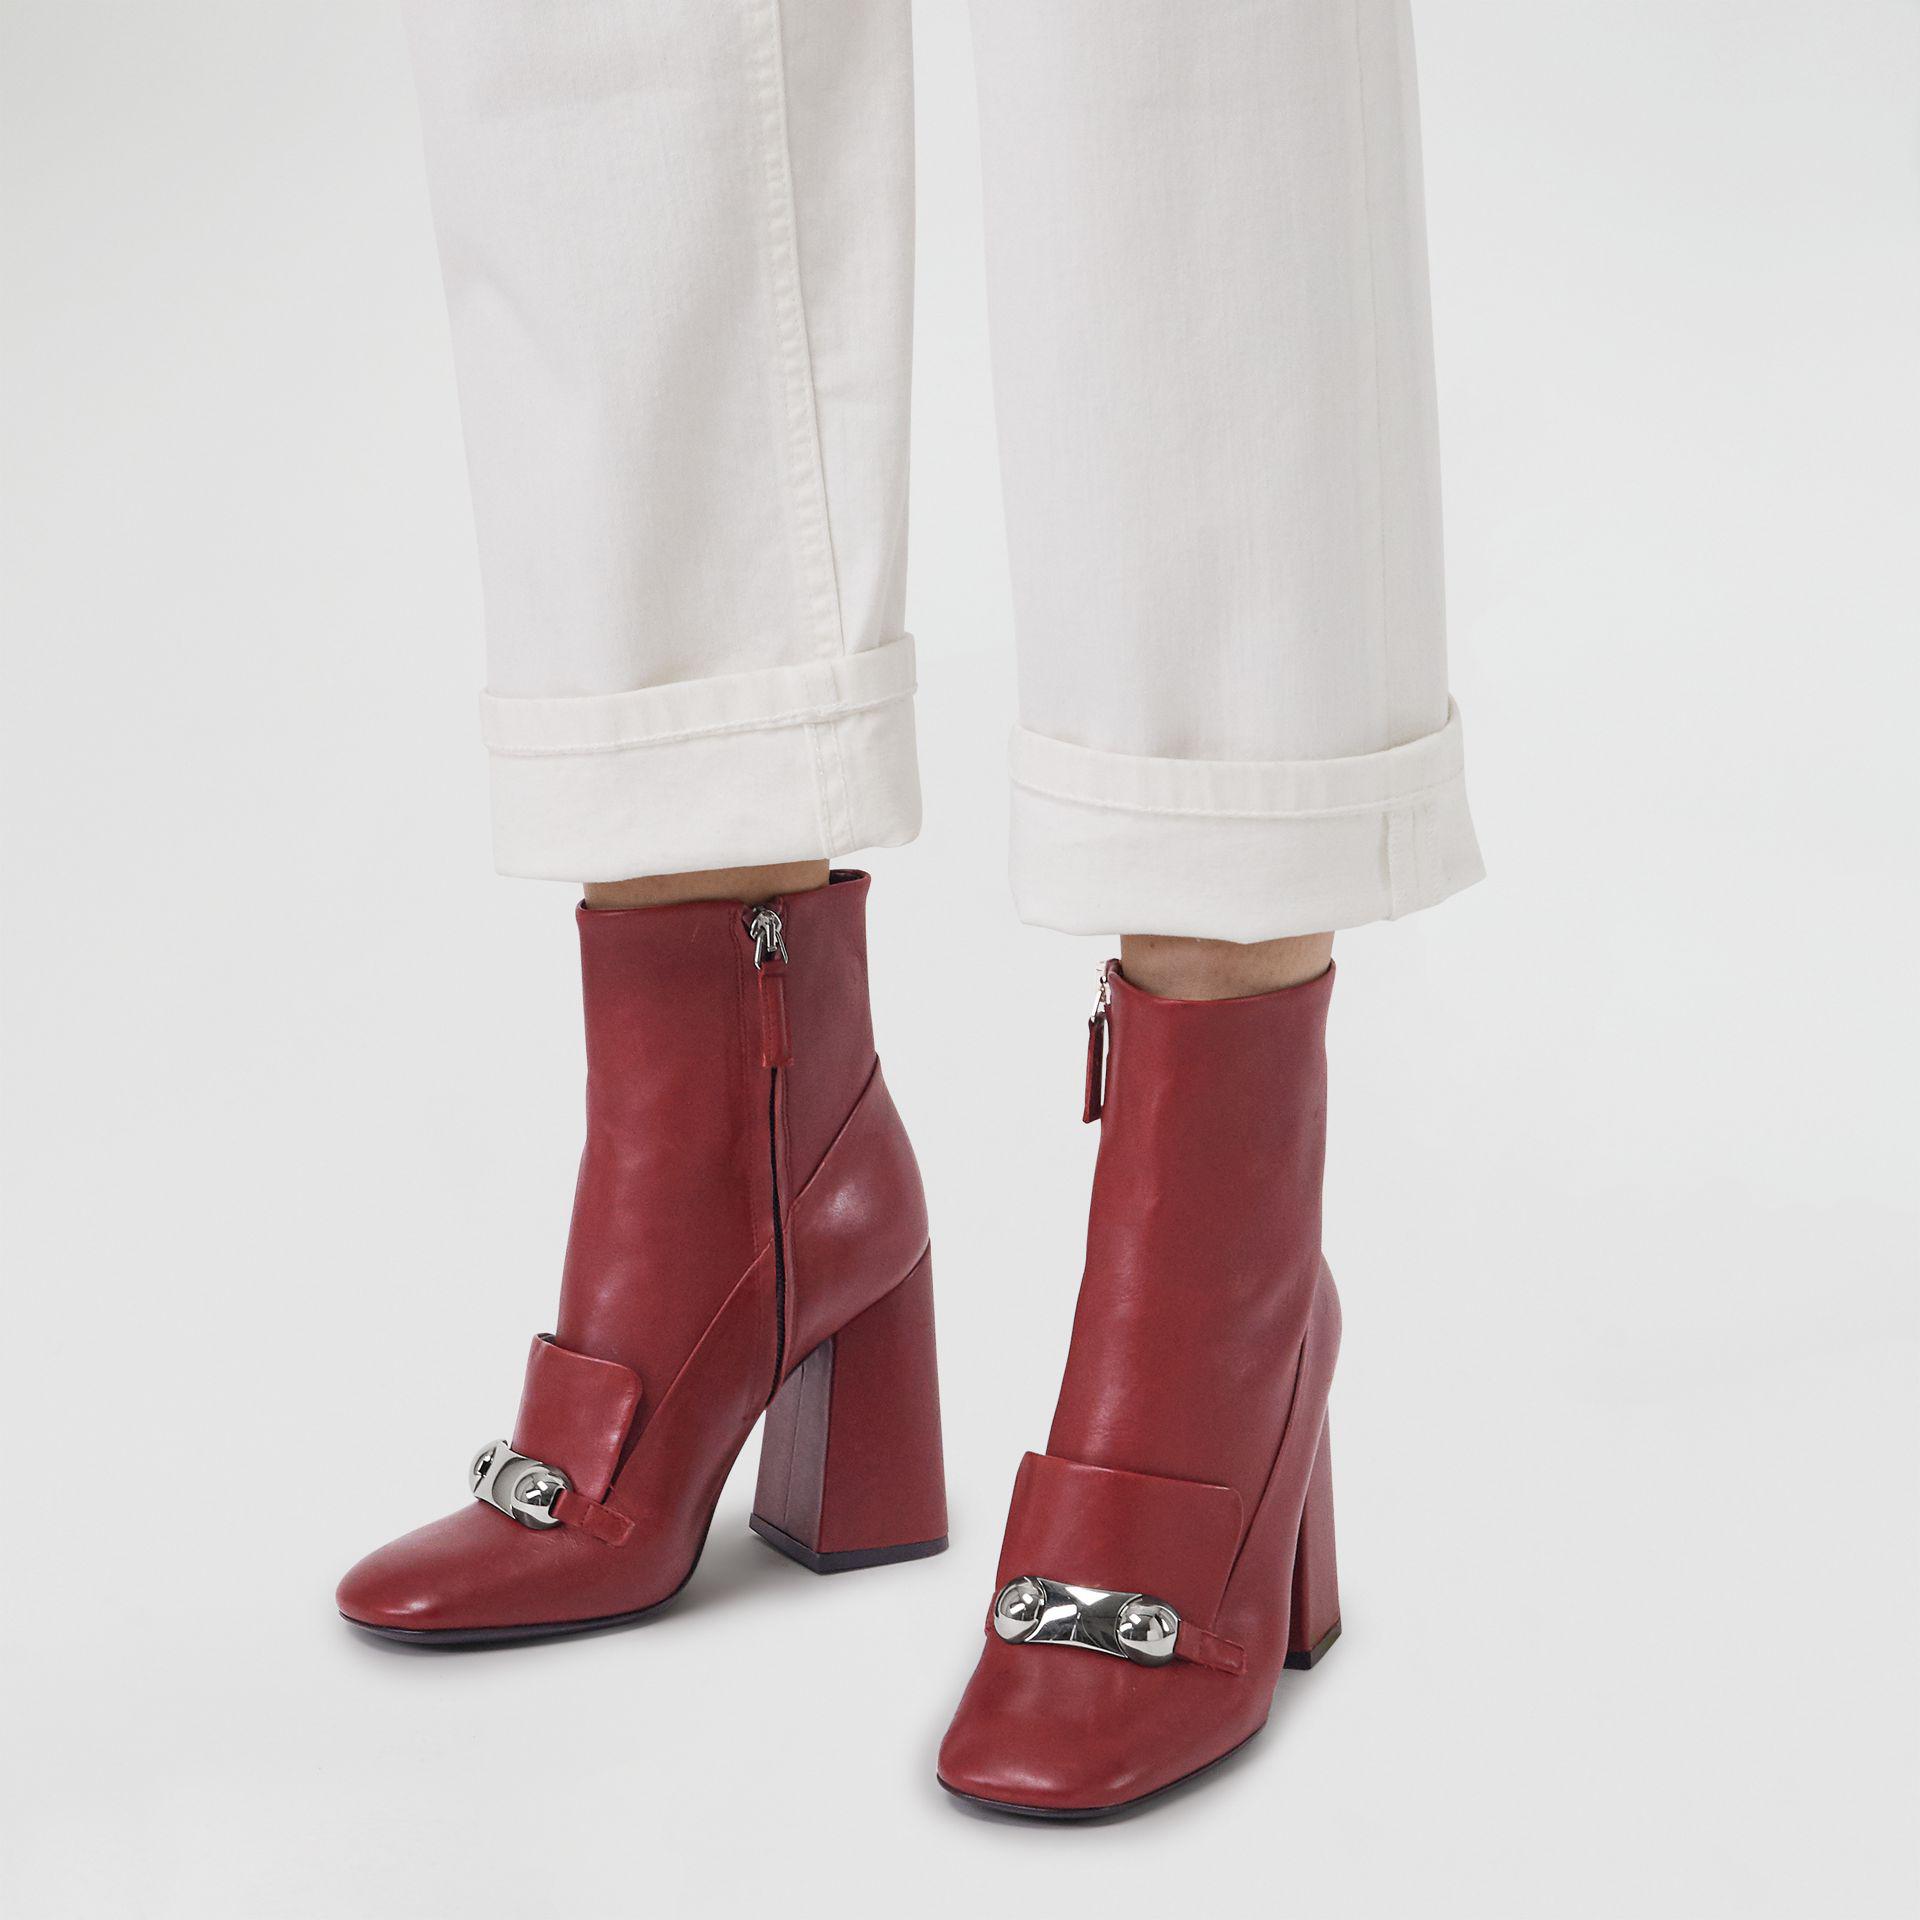 burberry boots womens bordeaux